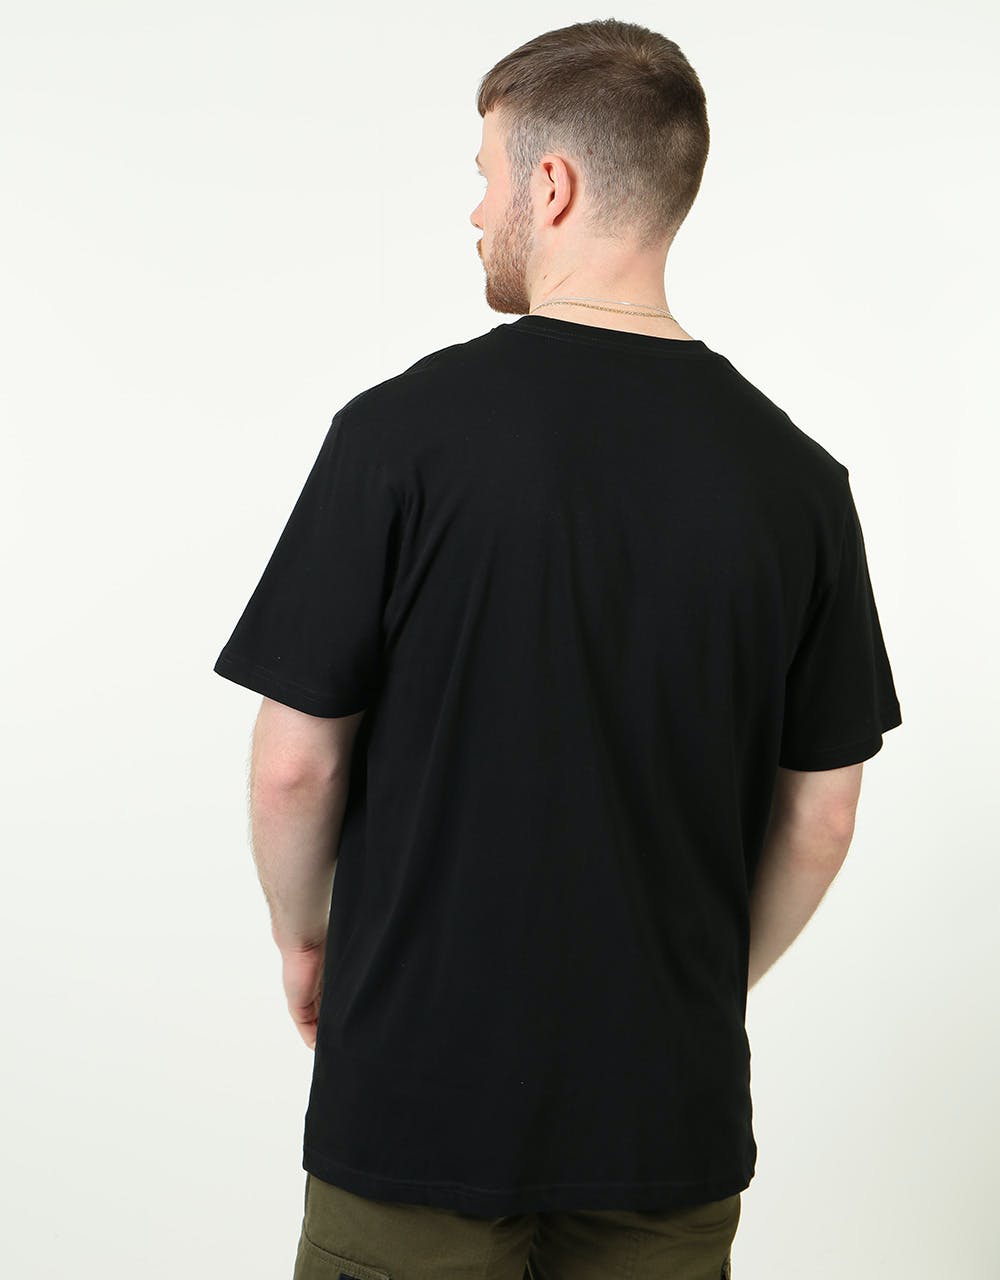 Vans OG Checker T-Shirt - Black